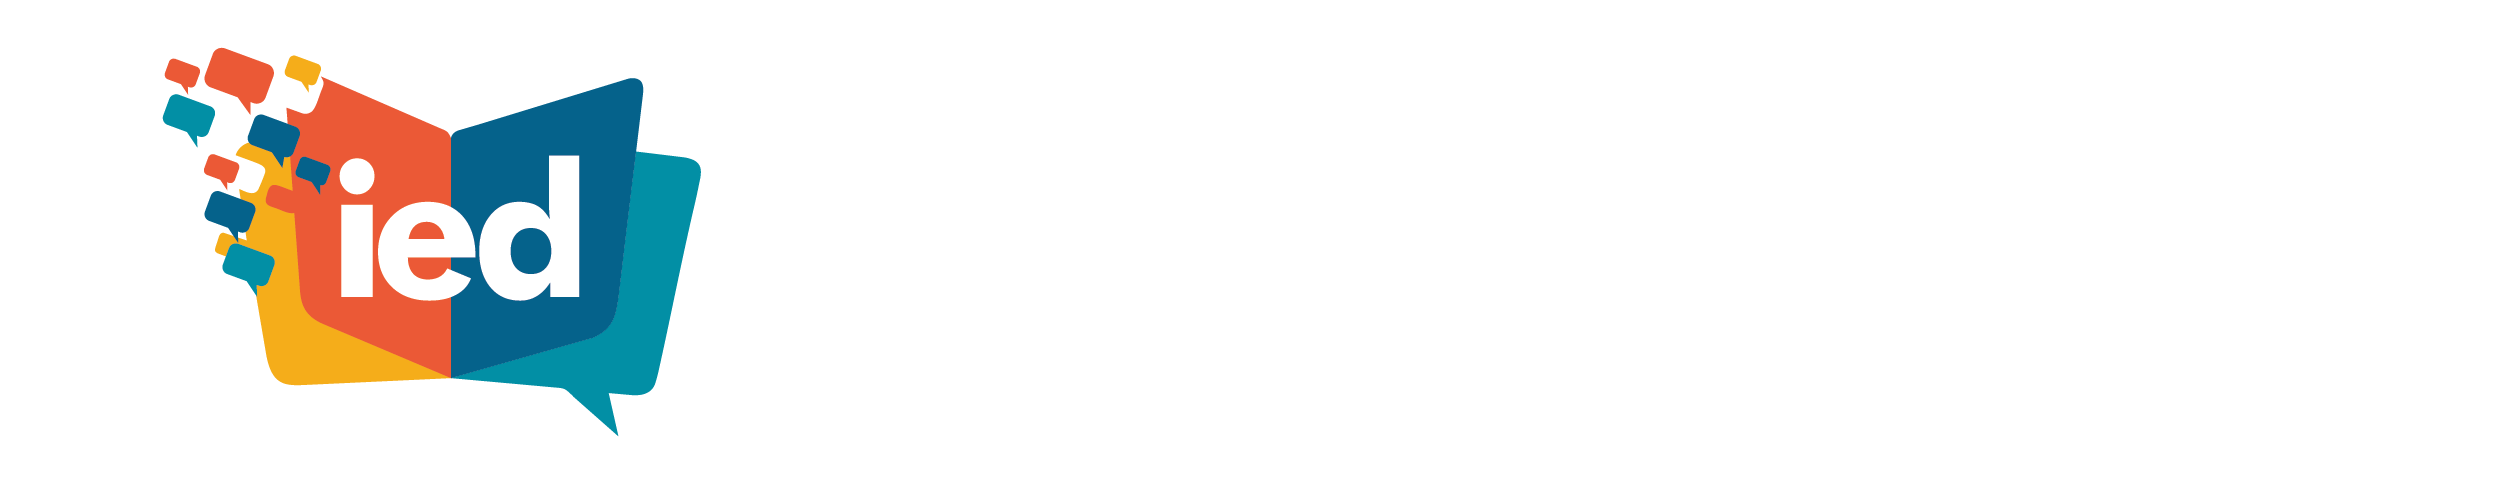 Instituto Educativo Digital